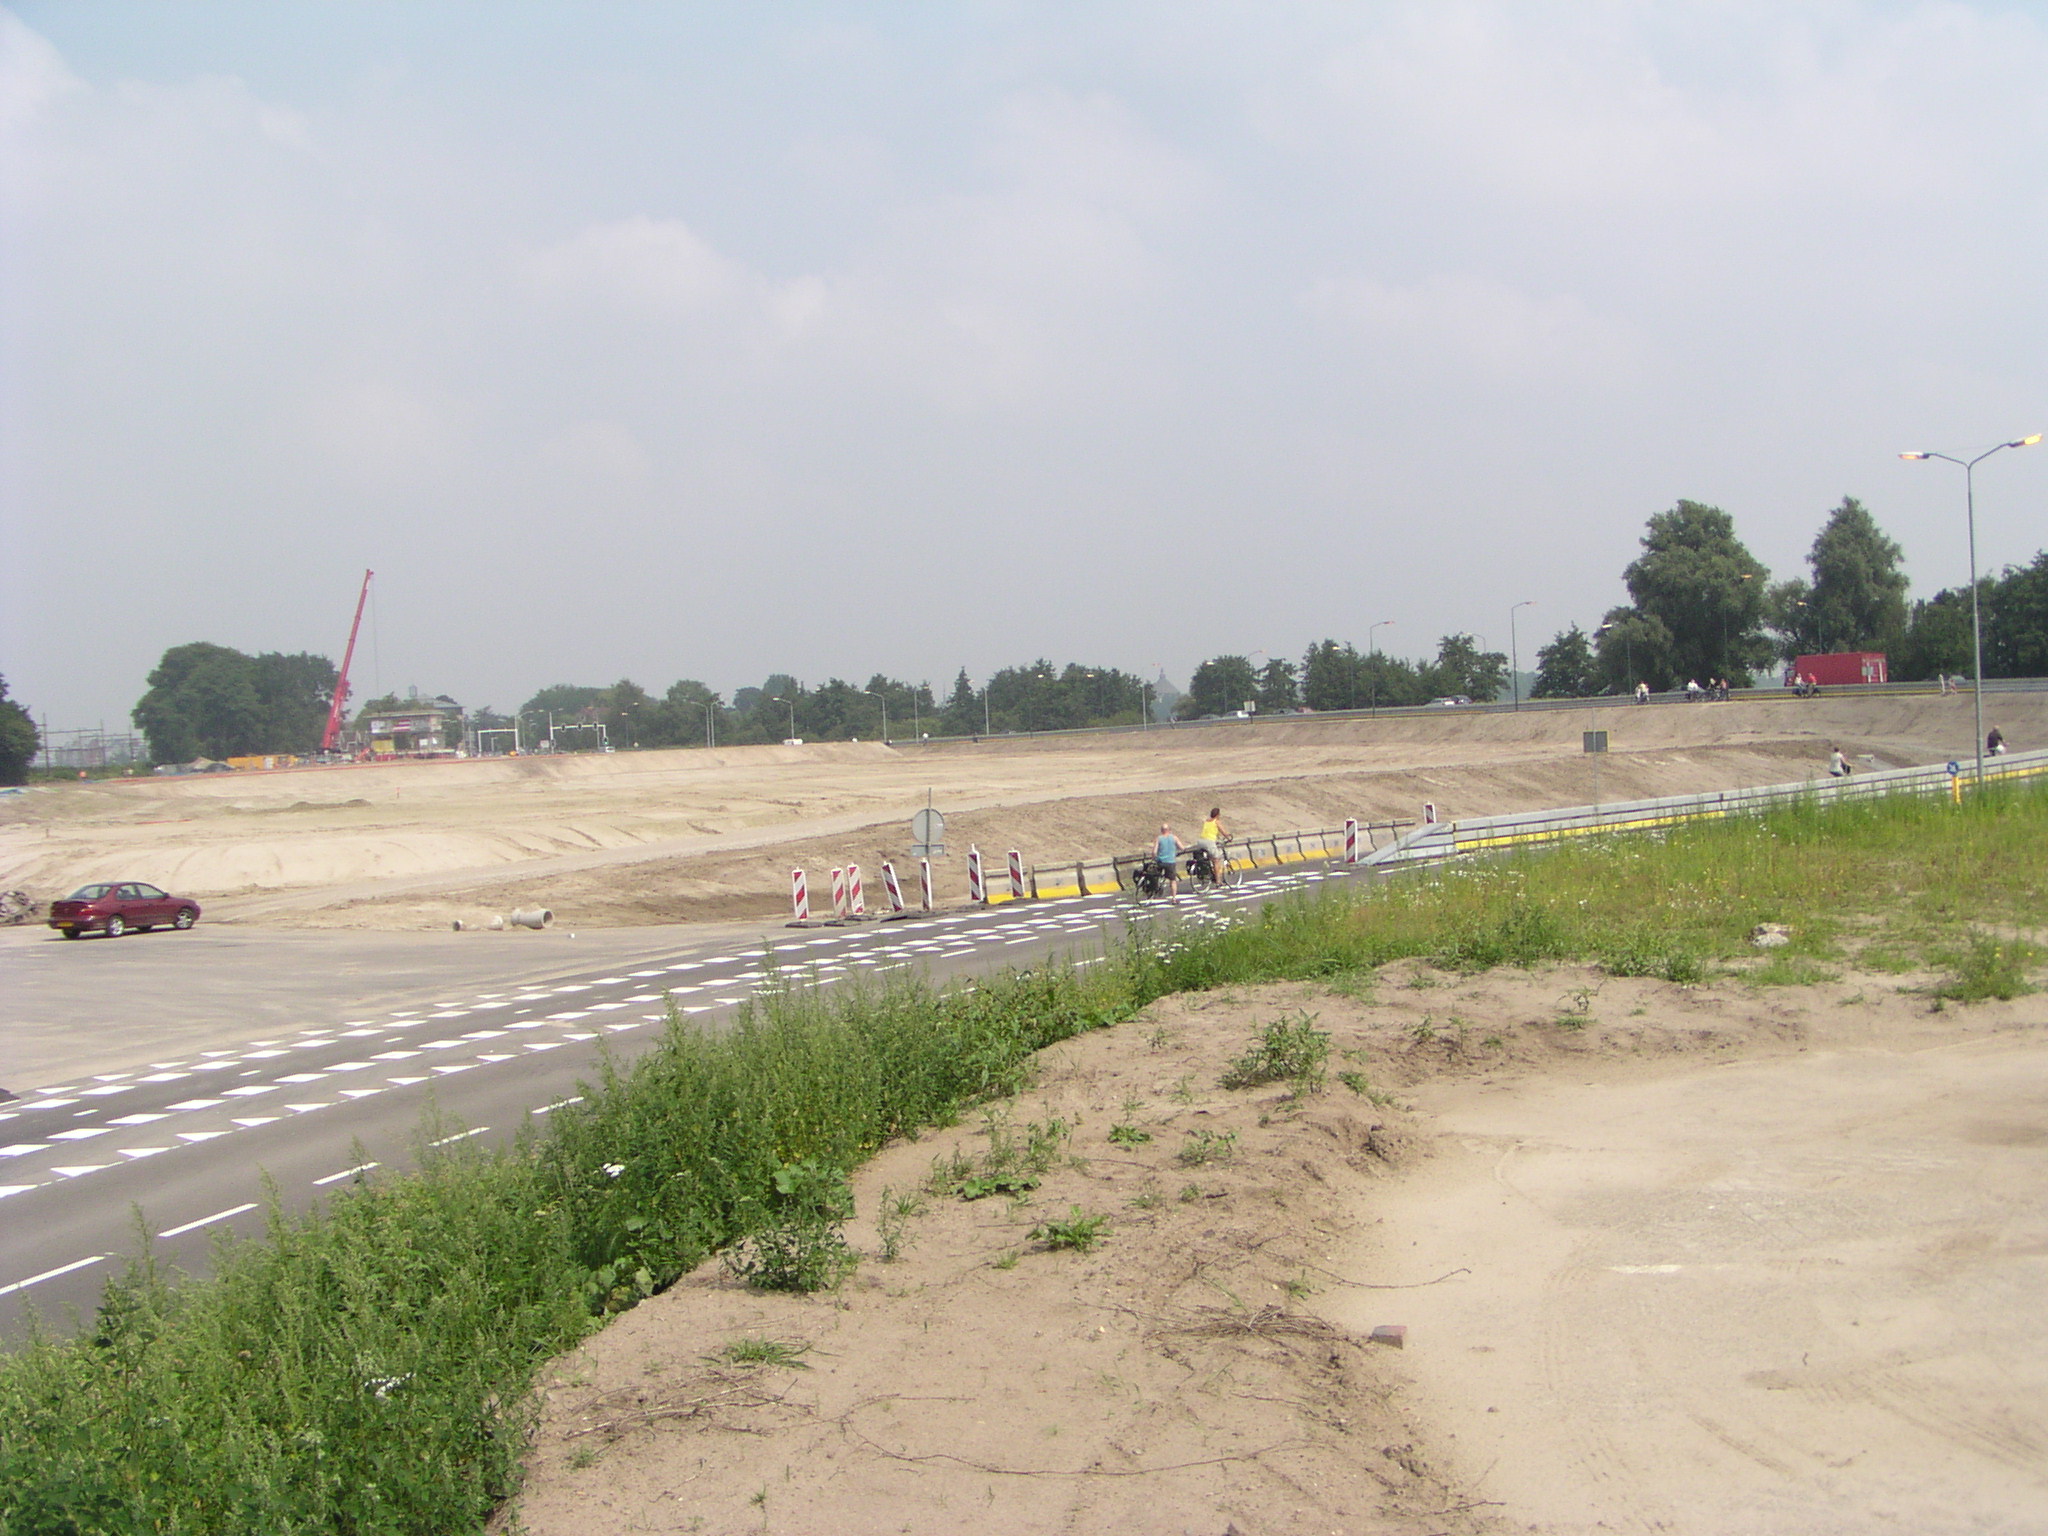 p7300032.jpg - Overzicht van de bouwvlakte tussen Vught en 's Hertogenbosch. Links is men een  bouwval  rijksmonument aan het verslepen dat precies op het trace van de nieuwe Gementweg lag.